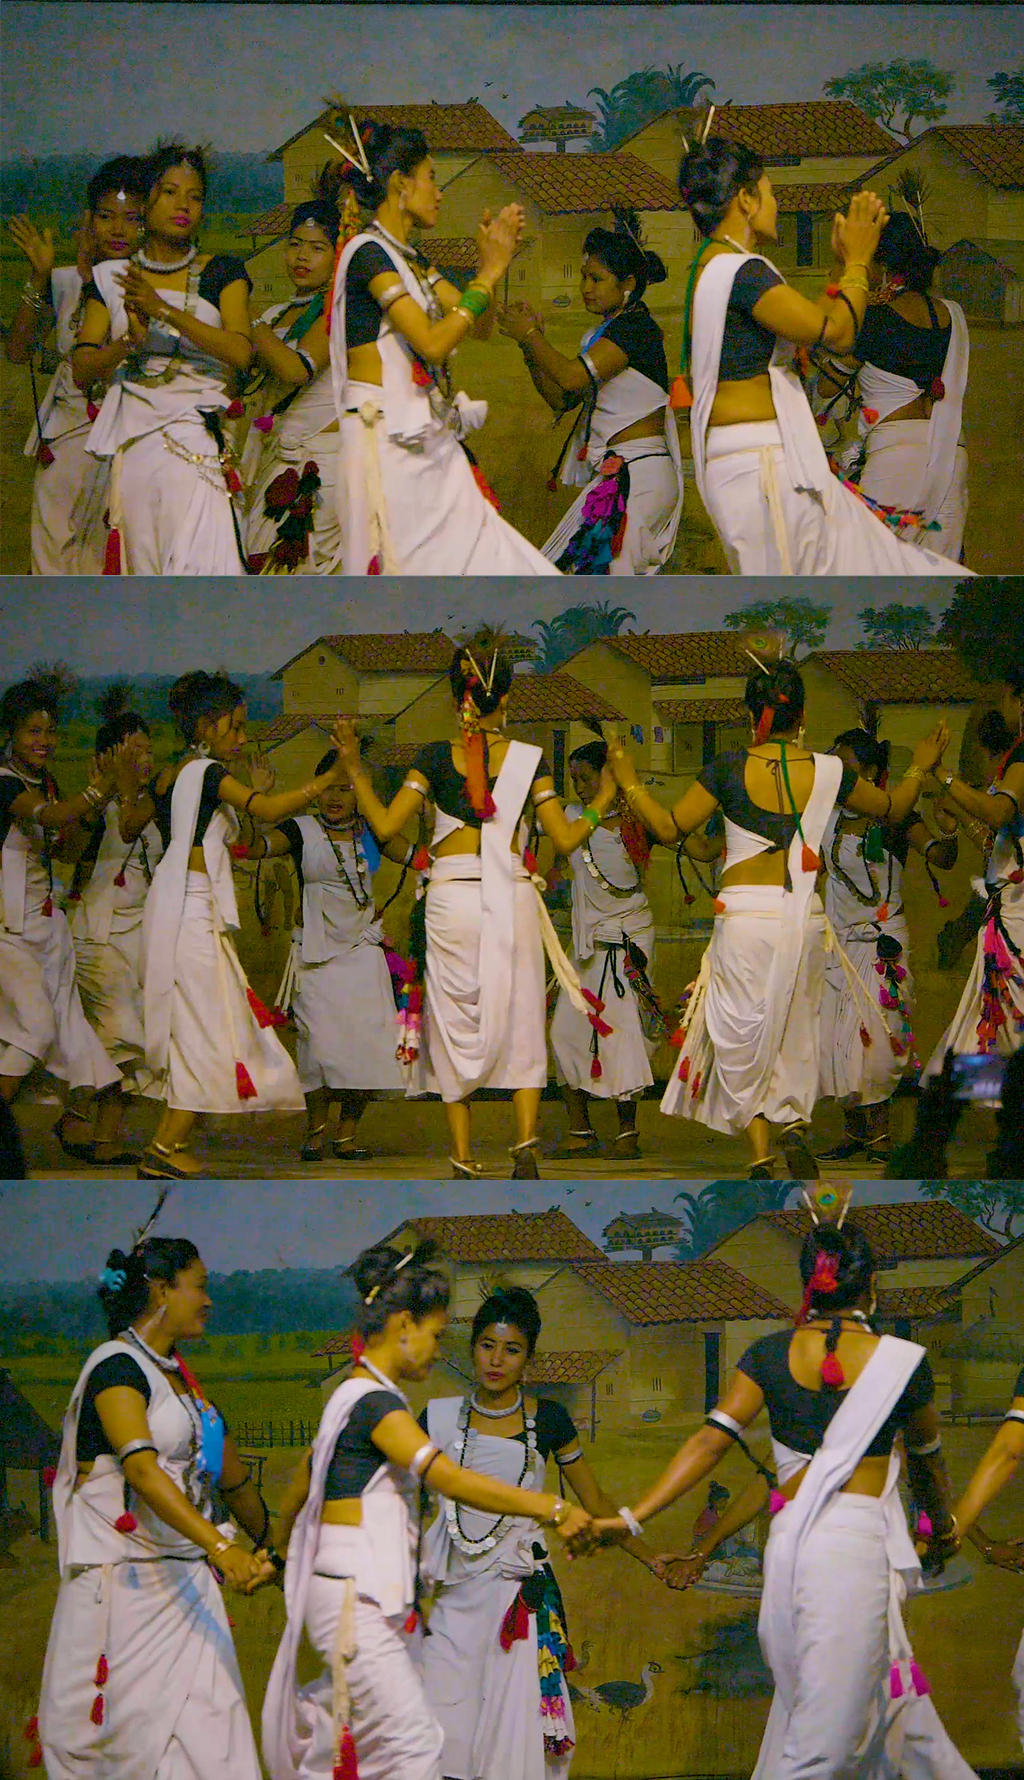 村落热带部落女人舞蹈狂欢晚会奇特旺旅升格